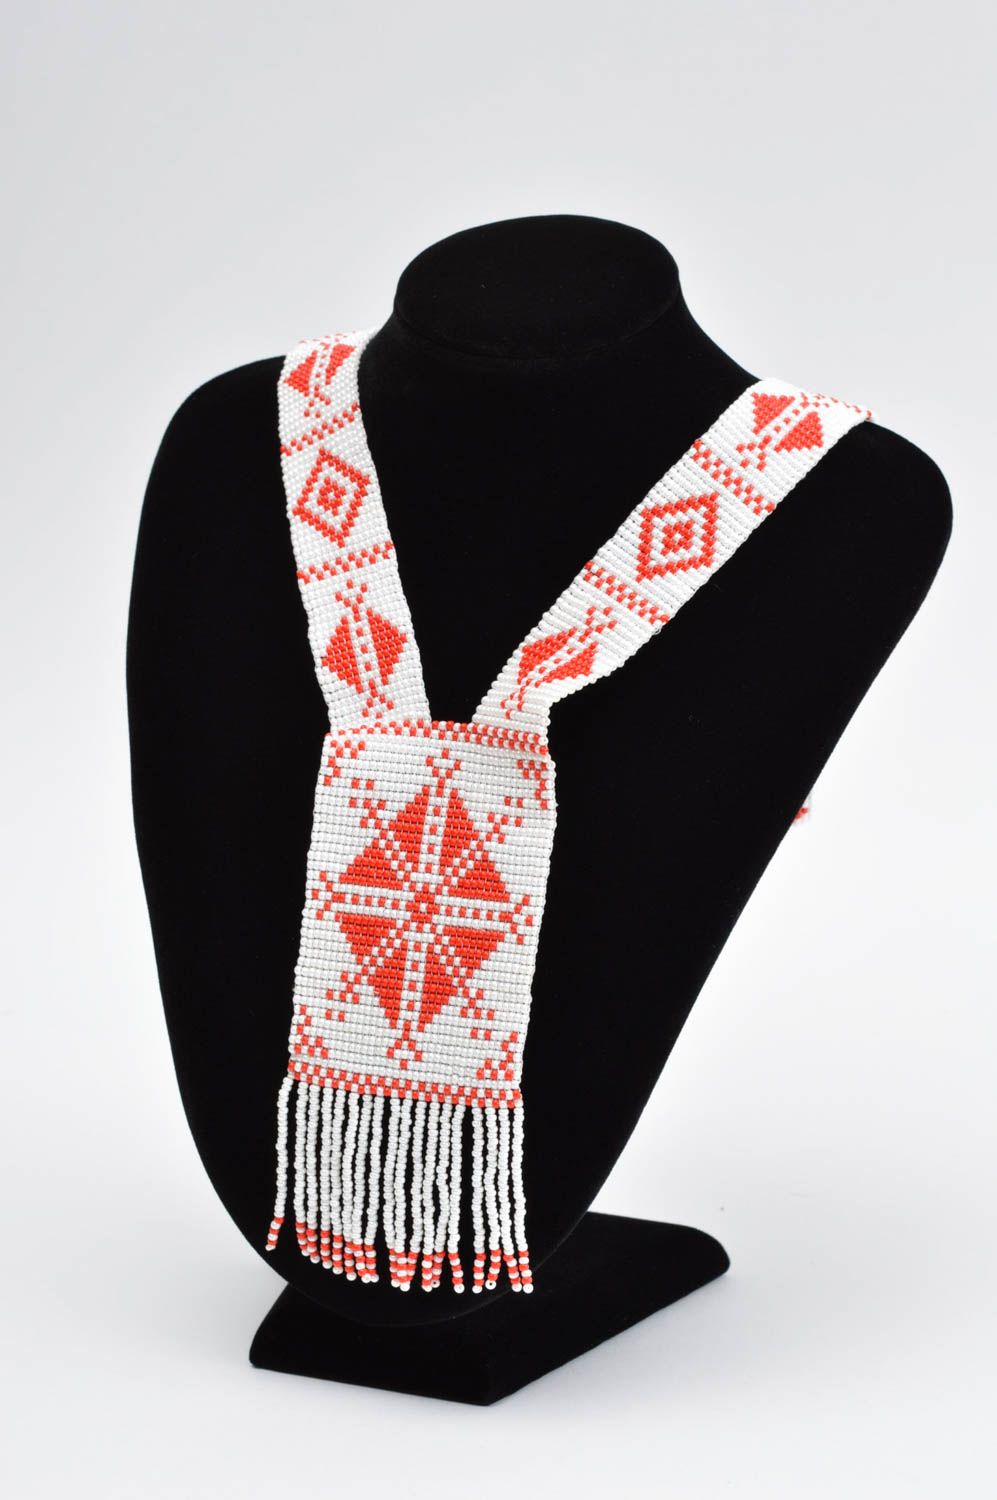 Украшение ручной работы гердан из бисера этническое украшение белое с красным  фото 1